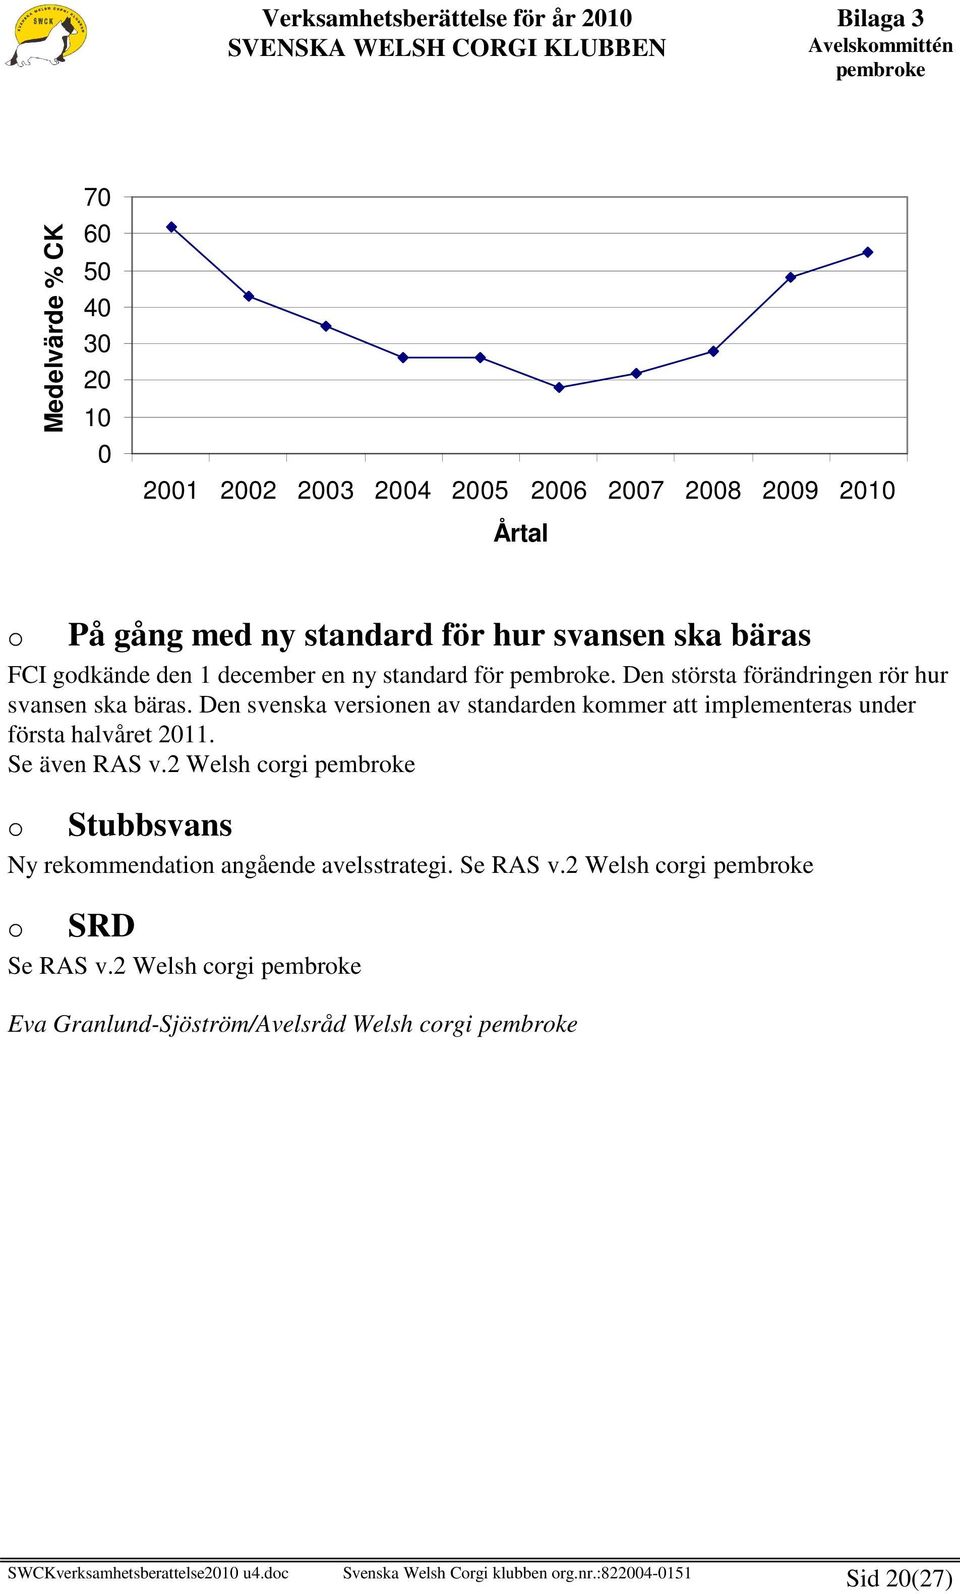 Den svenska versionen av standarden kommer att implementeras under första halvåret 2011. Se även RAS v.